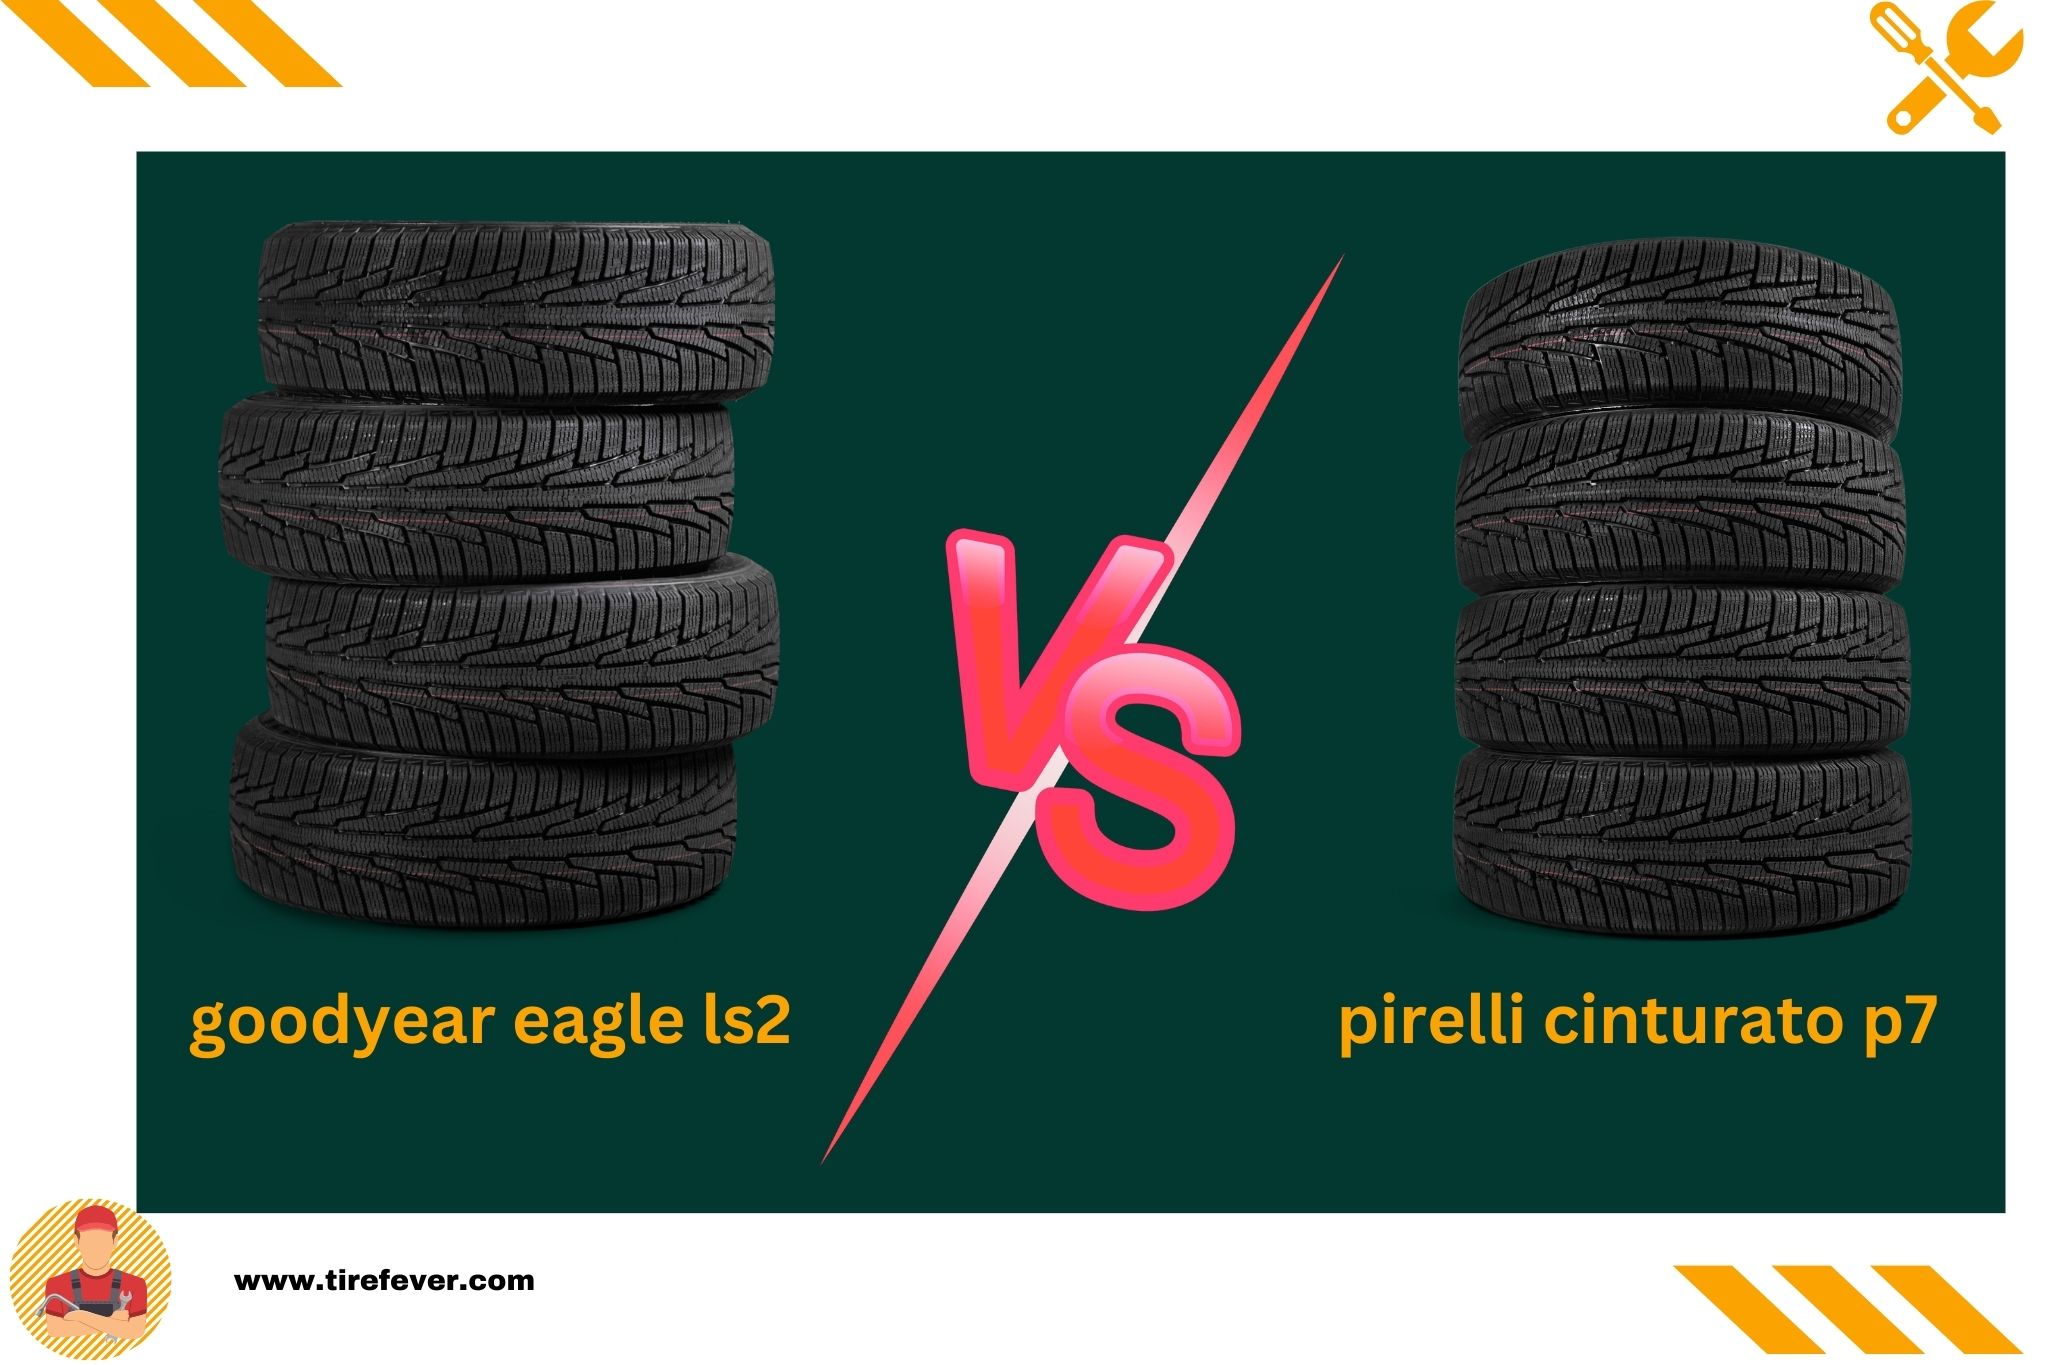 goodyear eagle ls2 vs pirelli cinturato p7